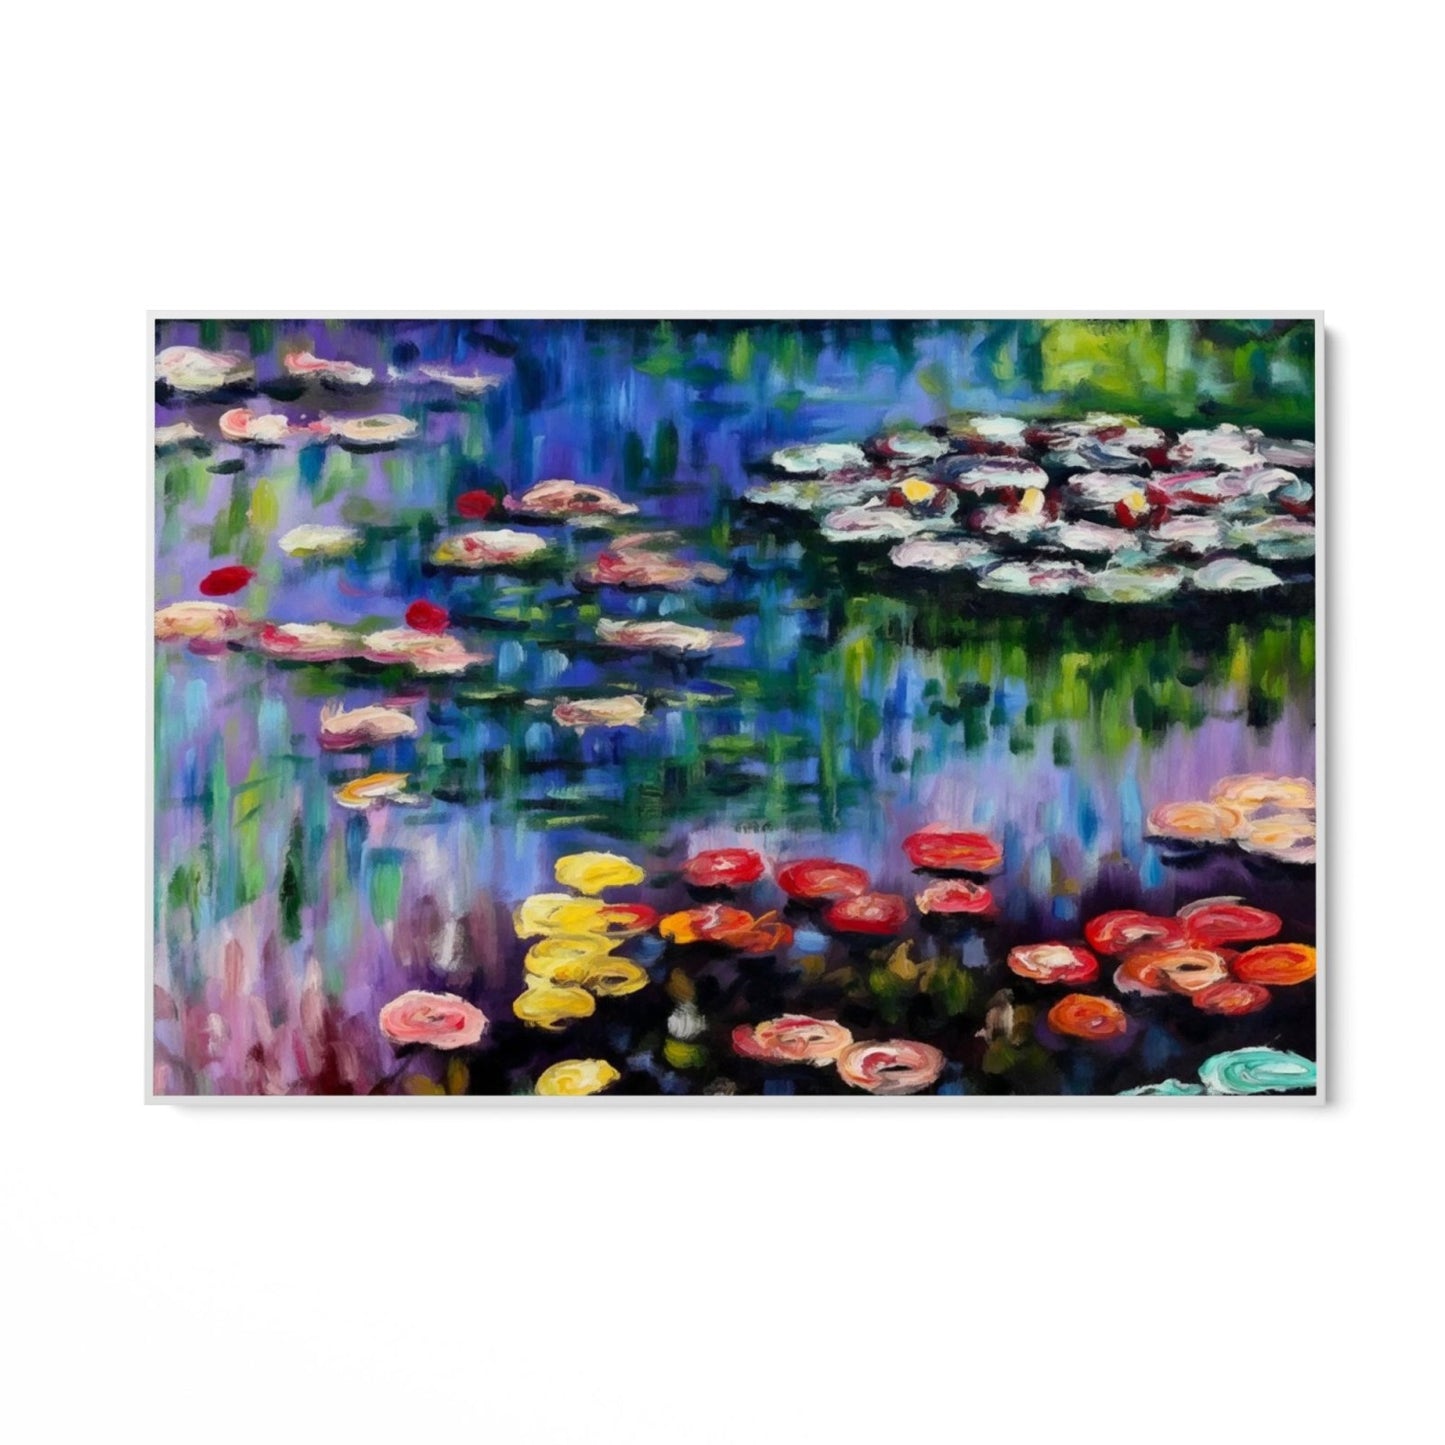 Seerosen im Teich von Giverny – Claude Monet